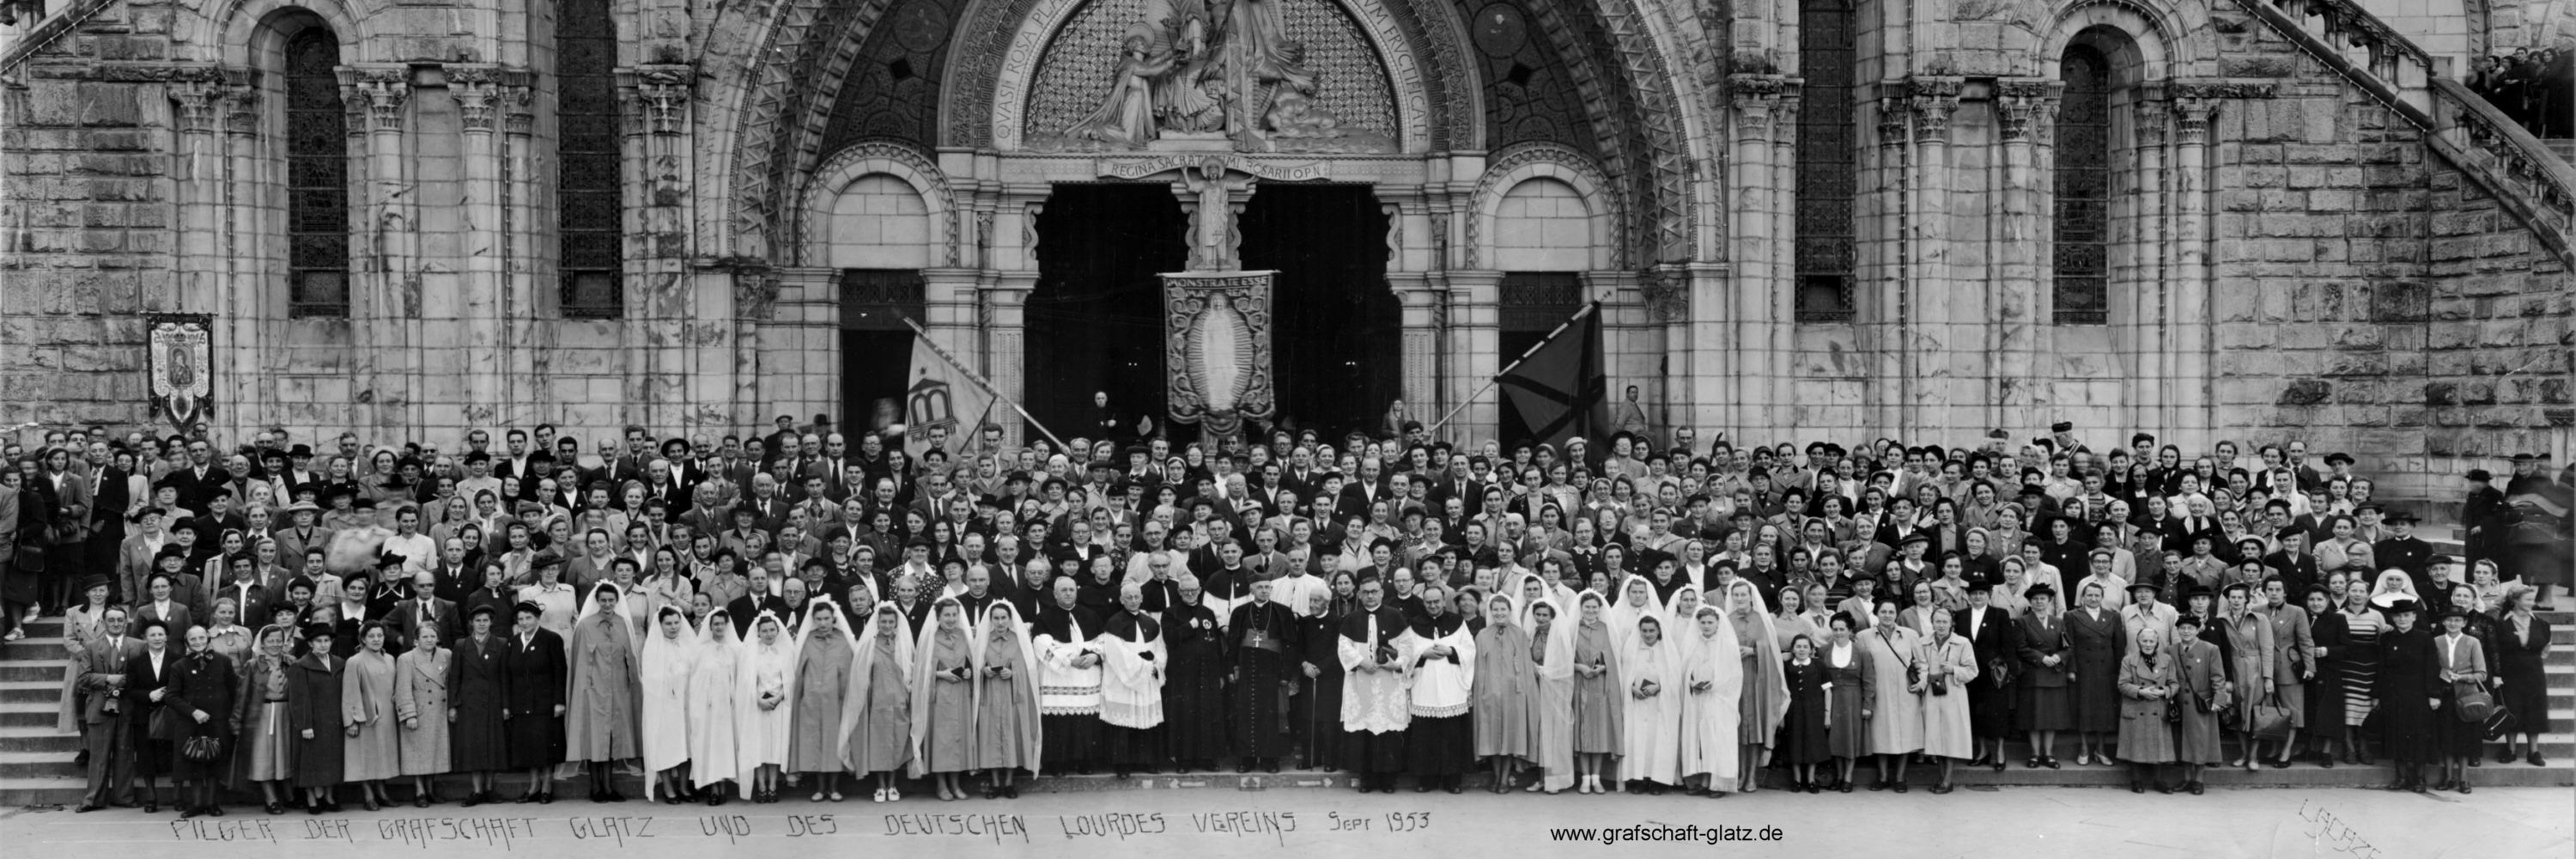 Pilger der Grafschaft Glatz in Lourdes Sept. 1953